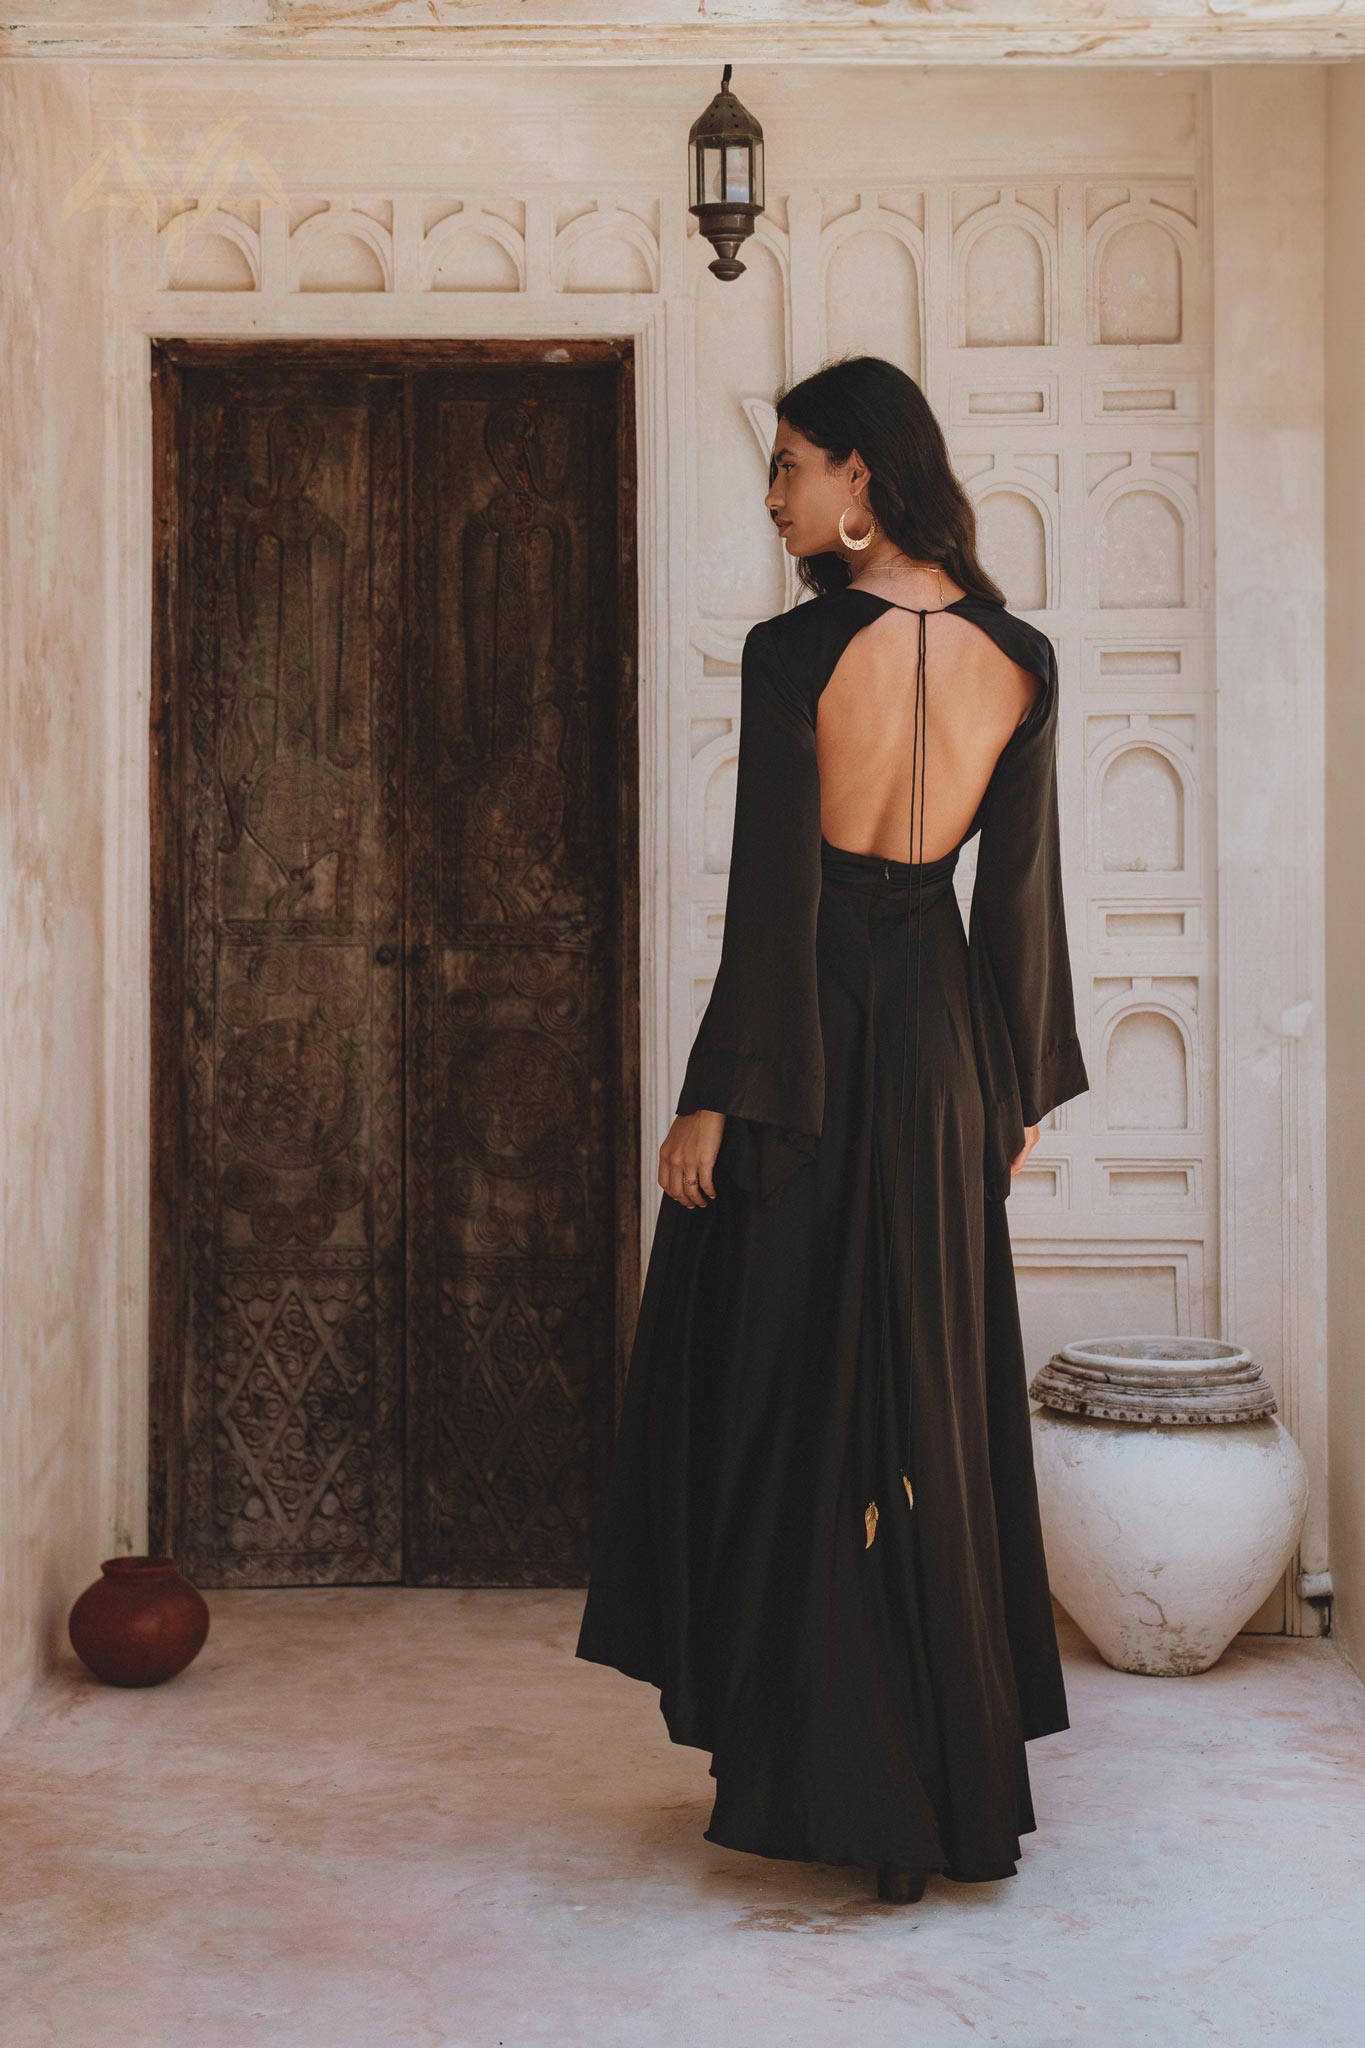 The Sei Silk Gown in Black